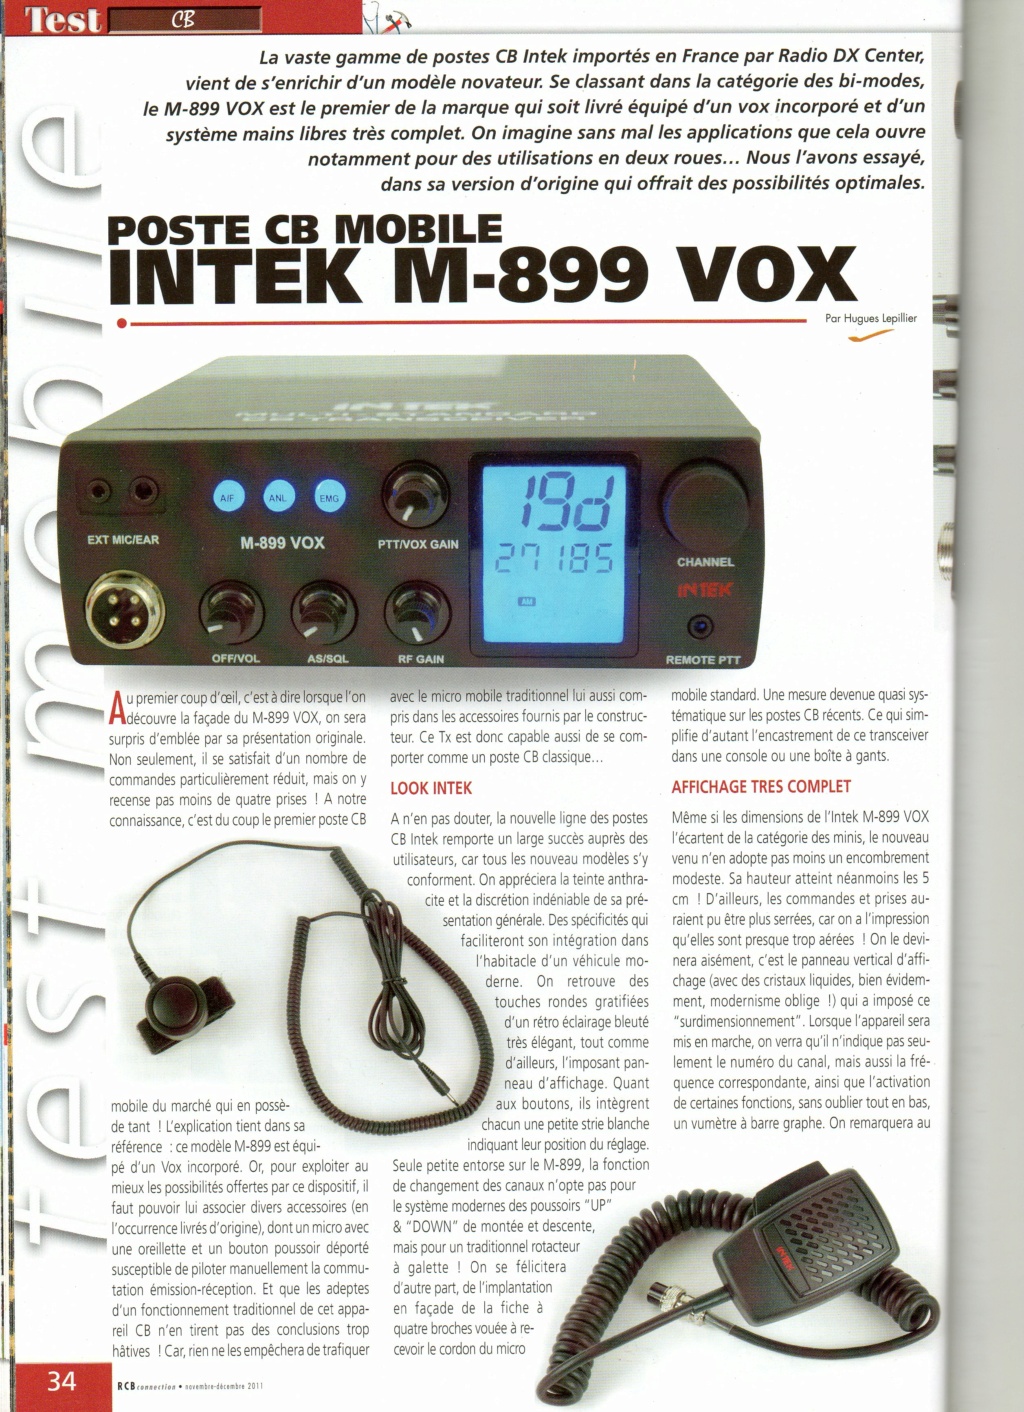 M-899 - Intek M-899 Vox (Mobile) Img49811